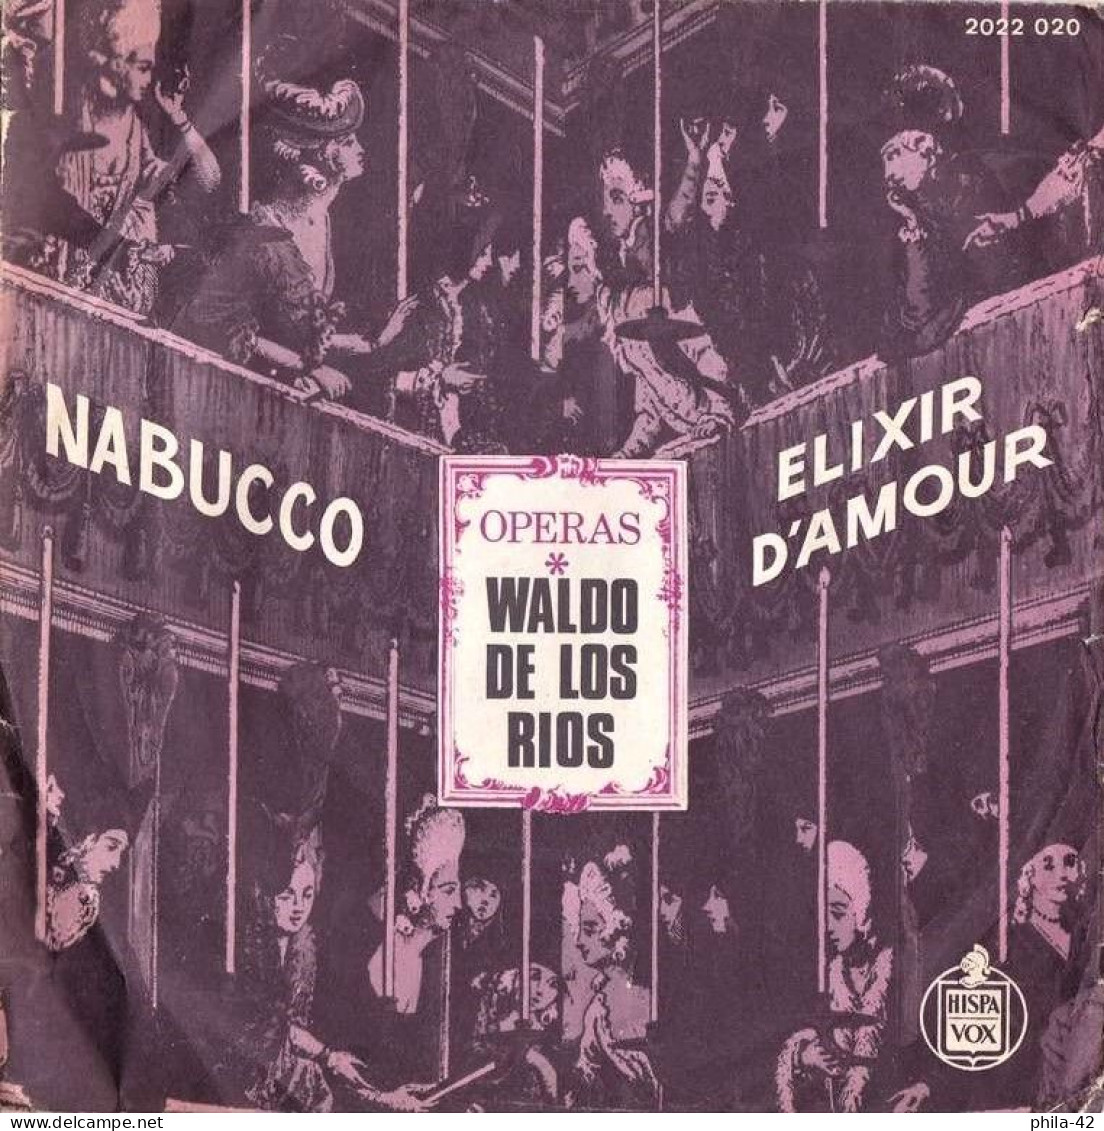 Waldo De Las Rios " Nabucco " Et " Elixir D'Amour "  Vinyle 45 Tours 1973 - HISPA VOX N° 2022 020 - Oper & Operette